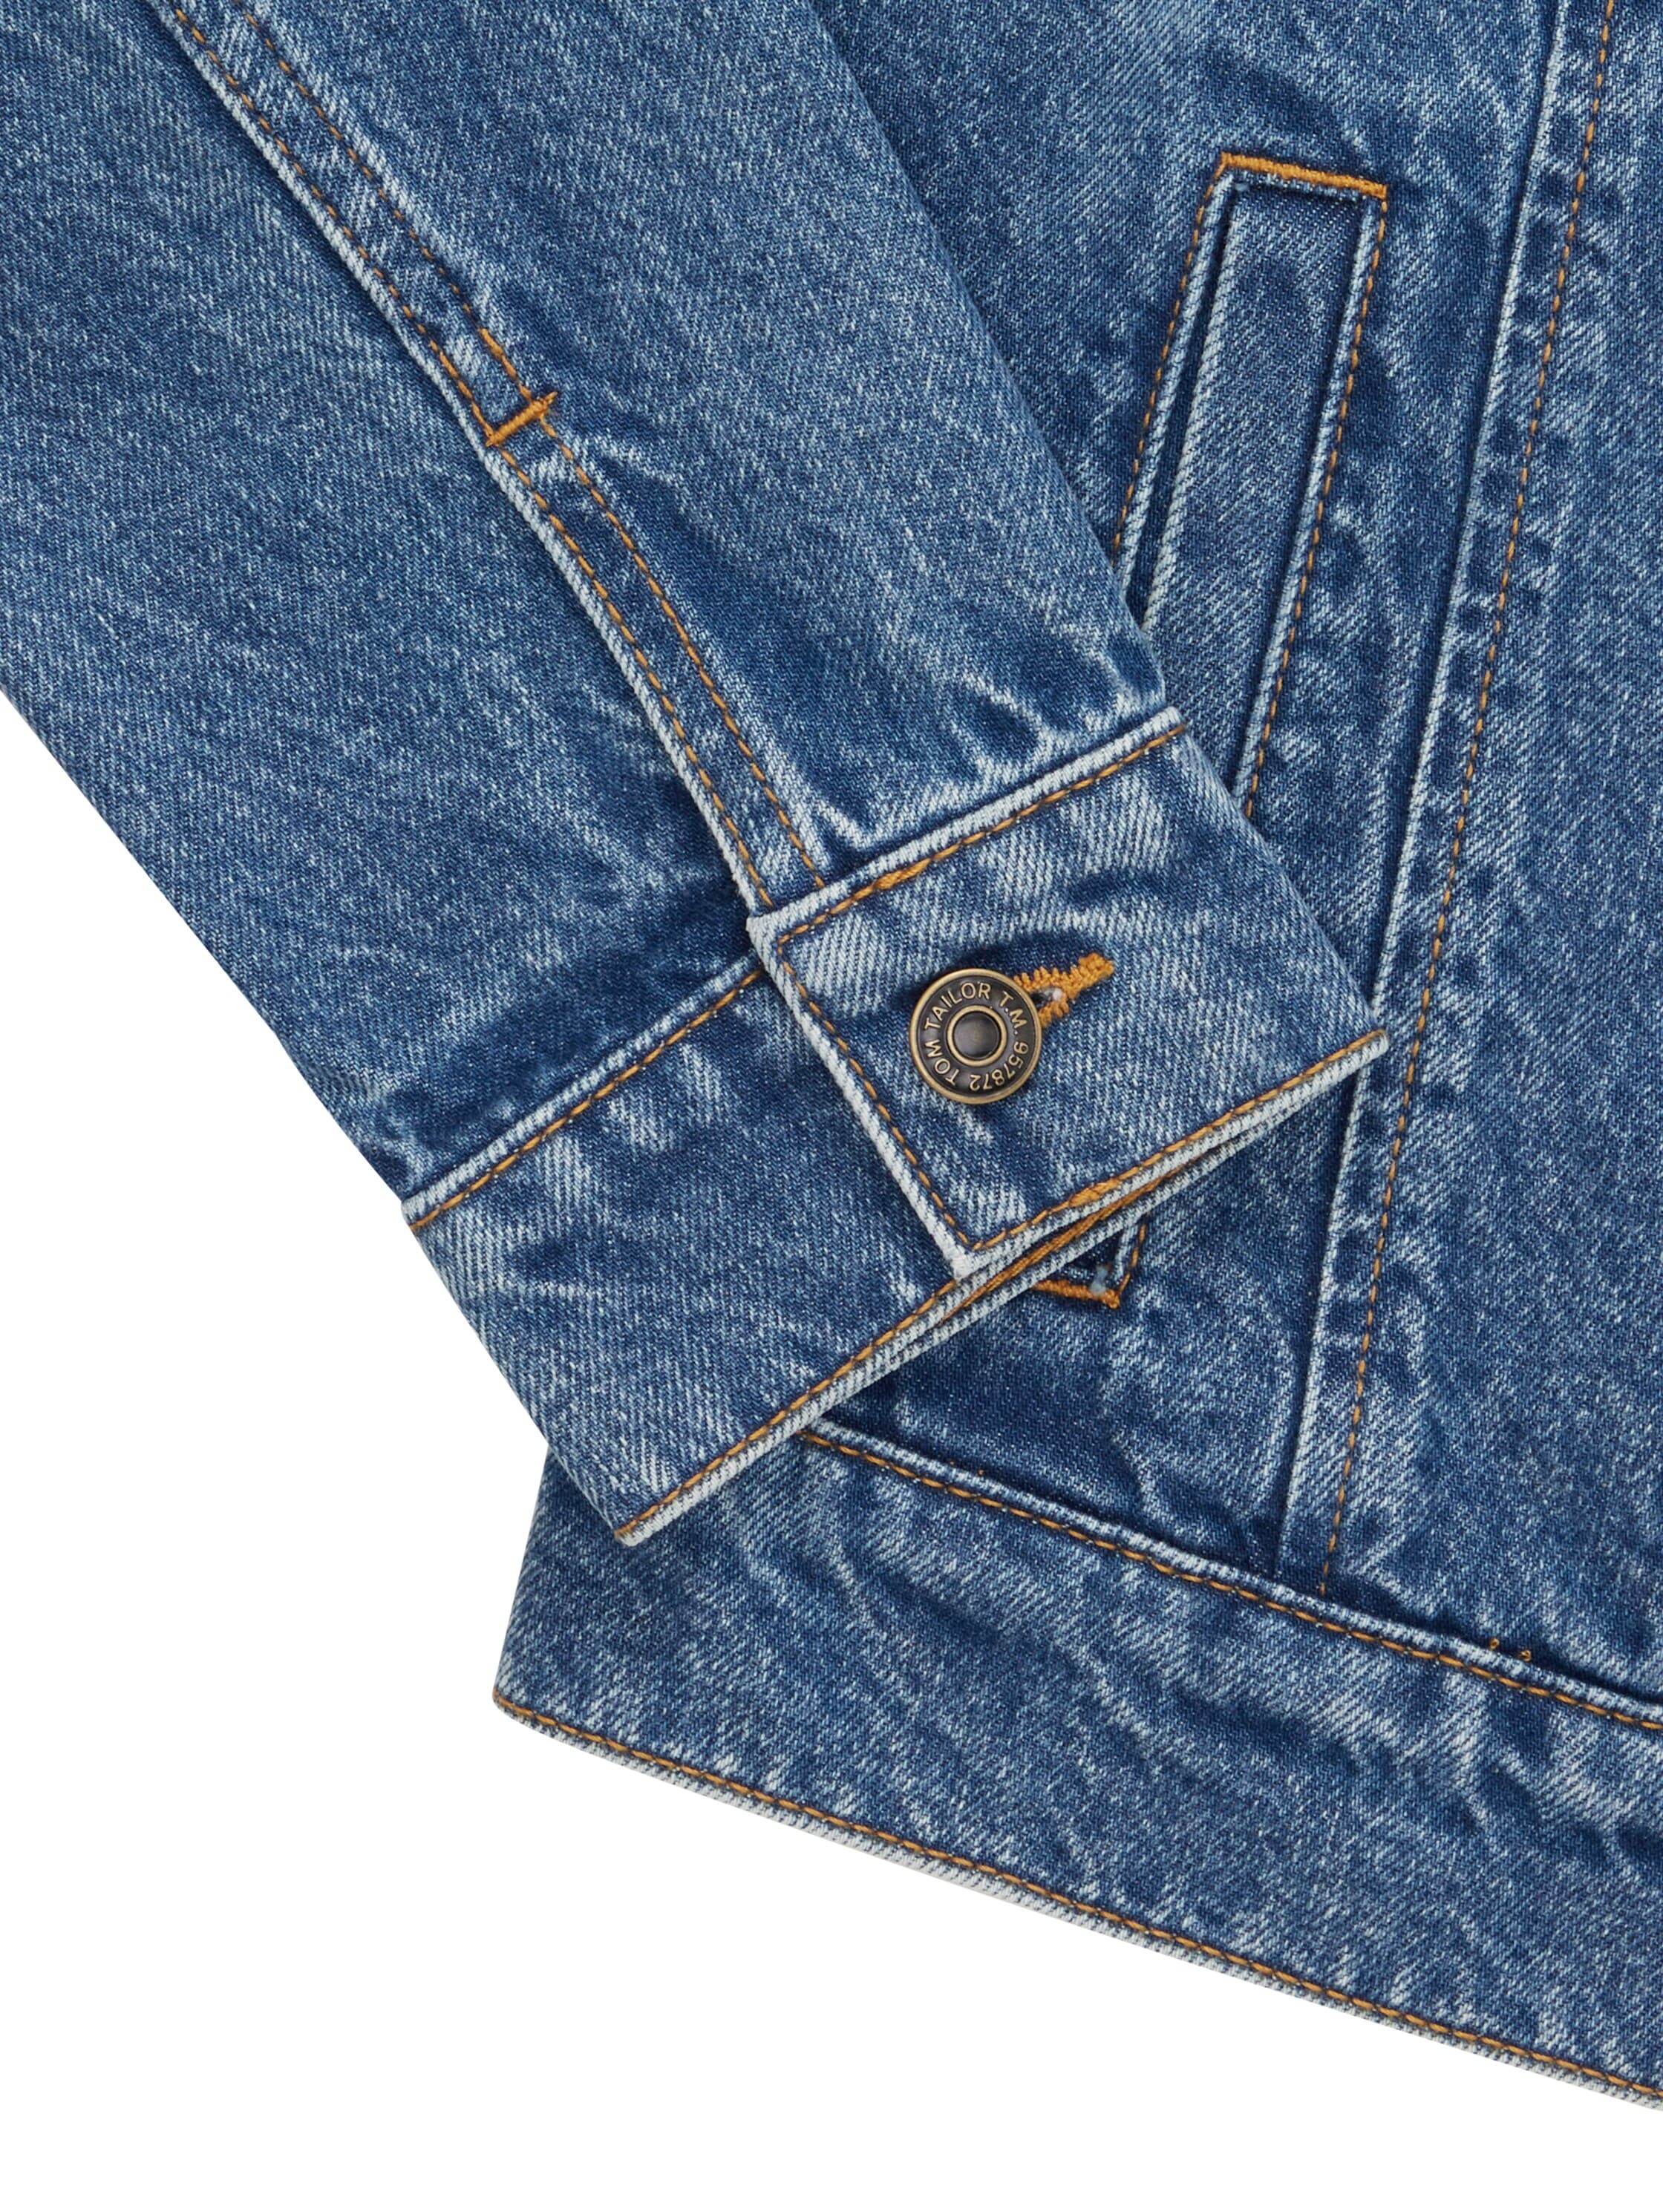 TOM TAILOR Jeansjacke, ohne Kapuze, mit Knopfleiste und Eingrifftaschen